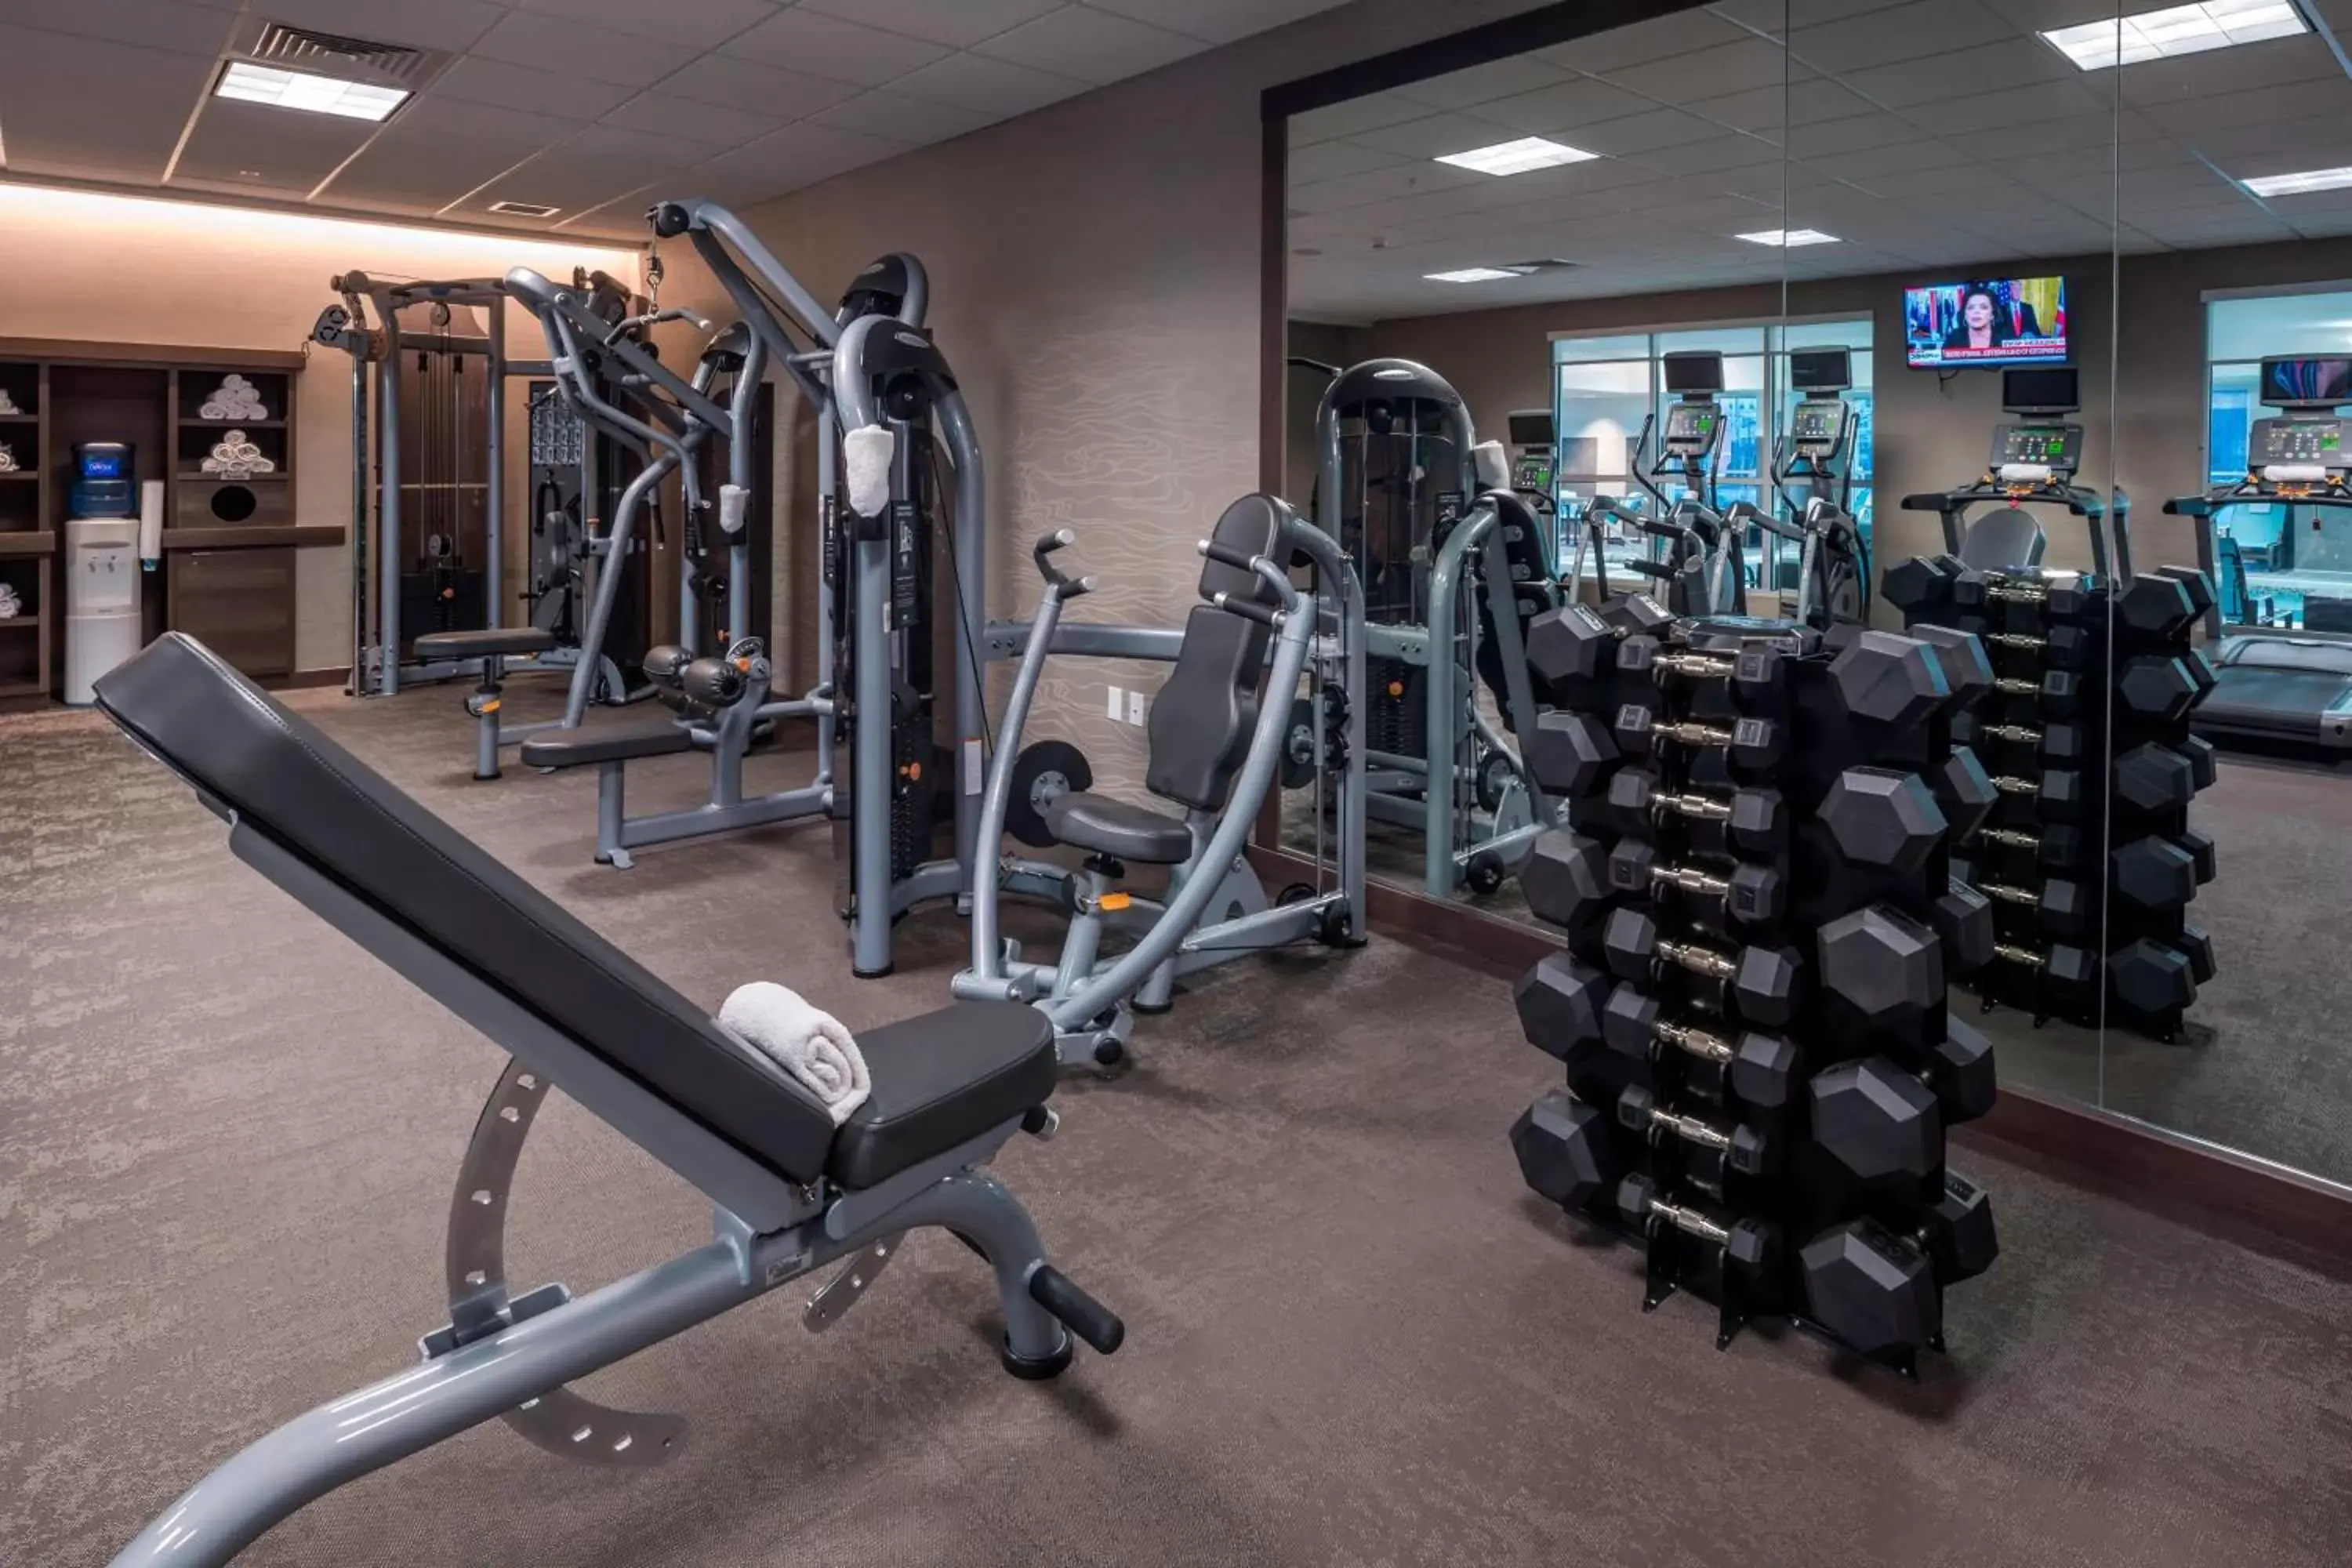 Fitness centre/facilities, Fitness Center/Facilities in Residence Inn by Marriott Fishkill